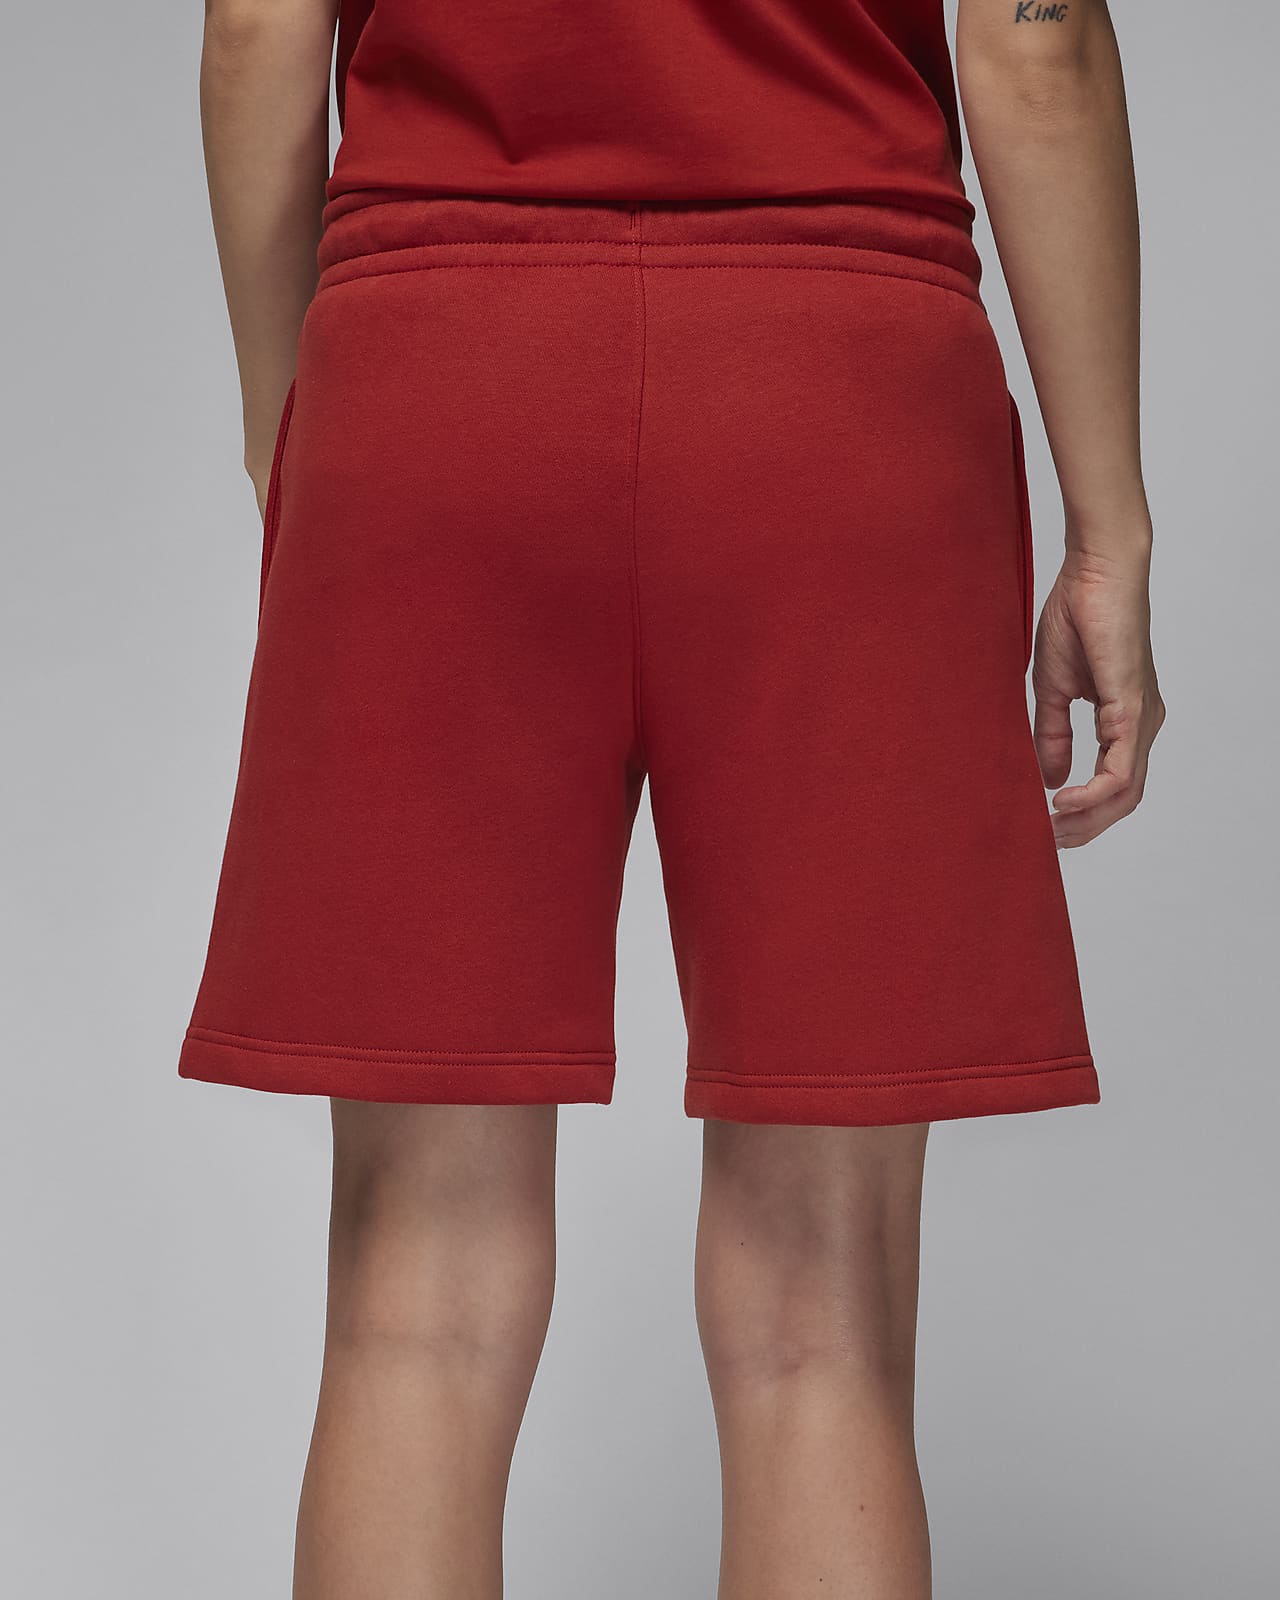 Jordan Brooklyn Fleece Women's Shorts